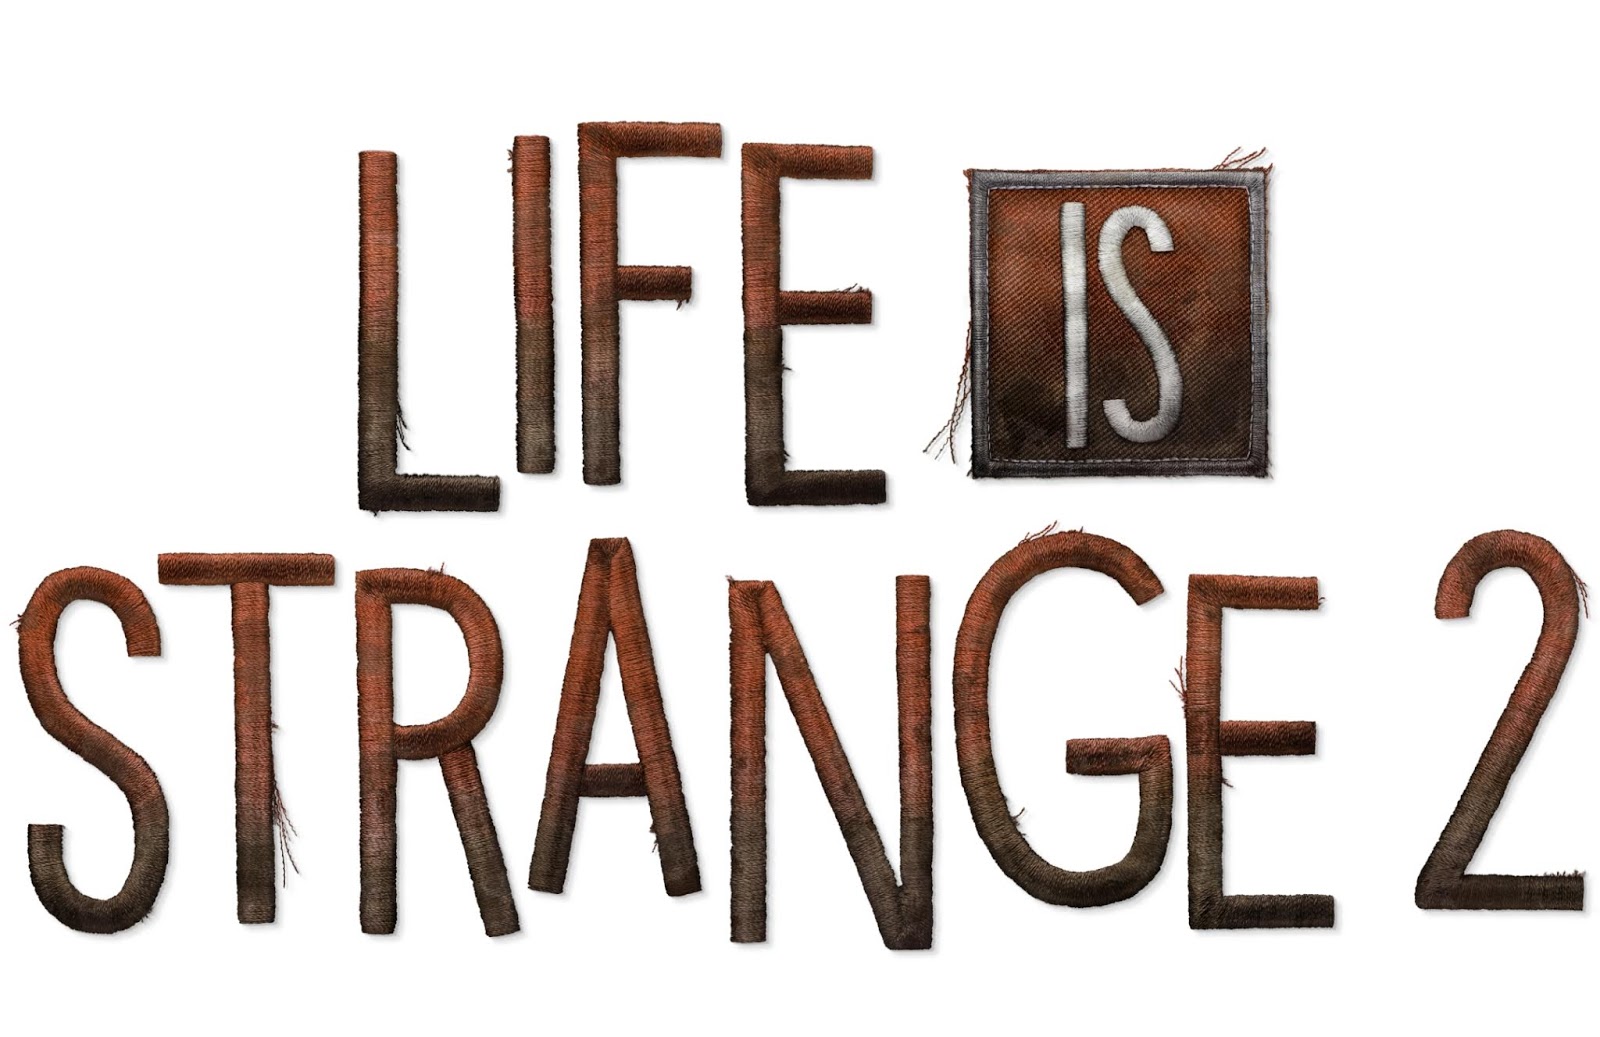 Life is жизнь. Life is Strange логотип. Life is Strange 2 logo. Life is Strange 2 эпизод 1 лого. Life is Strange надпись.